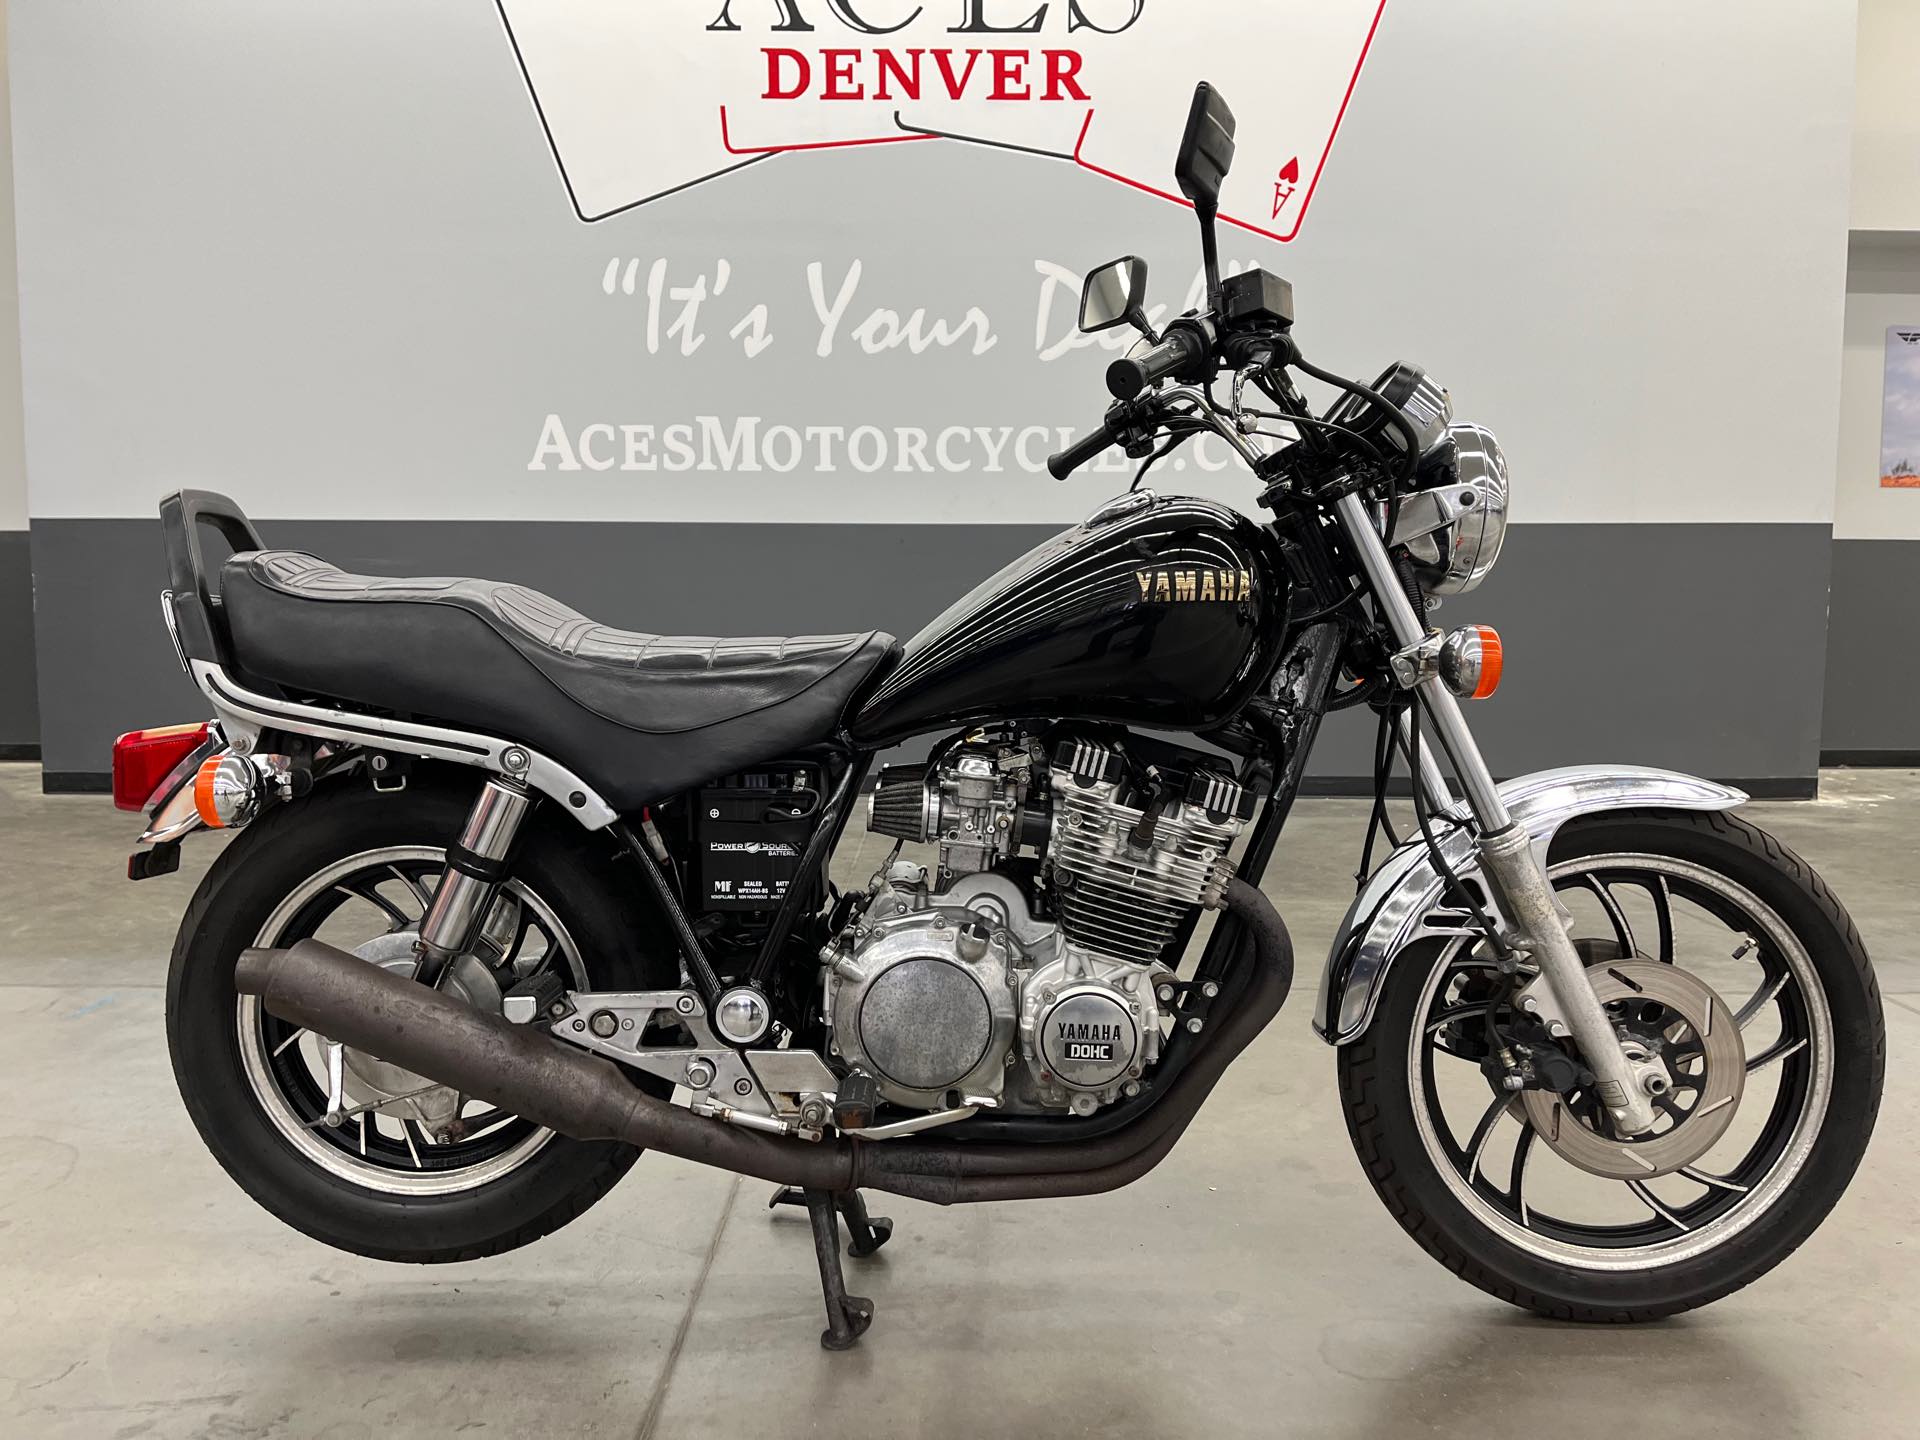 1982 YAMAHA XJ750 at Aces Motorcycles - Denver